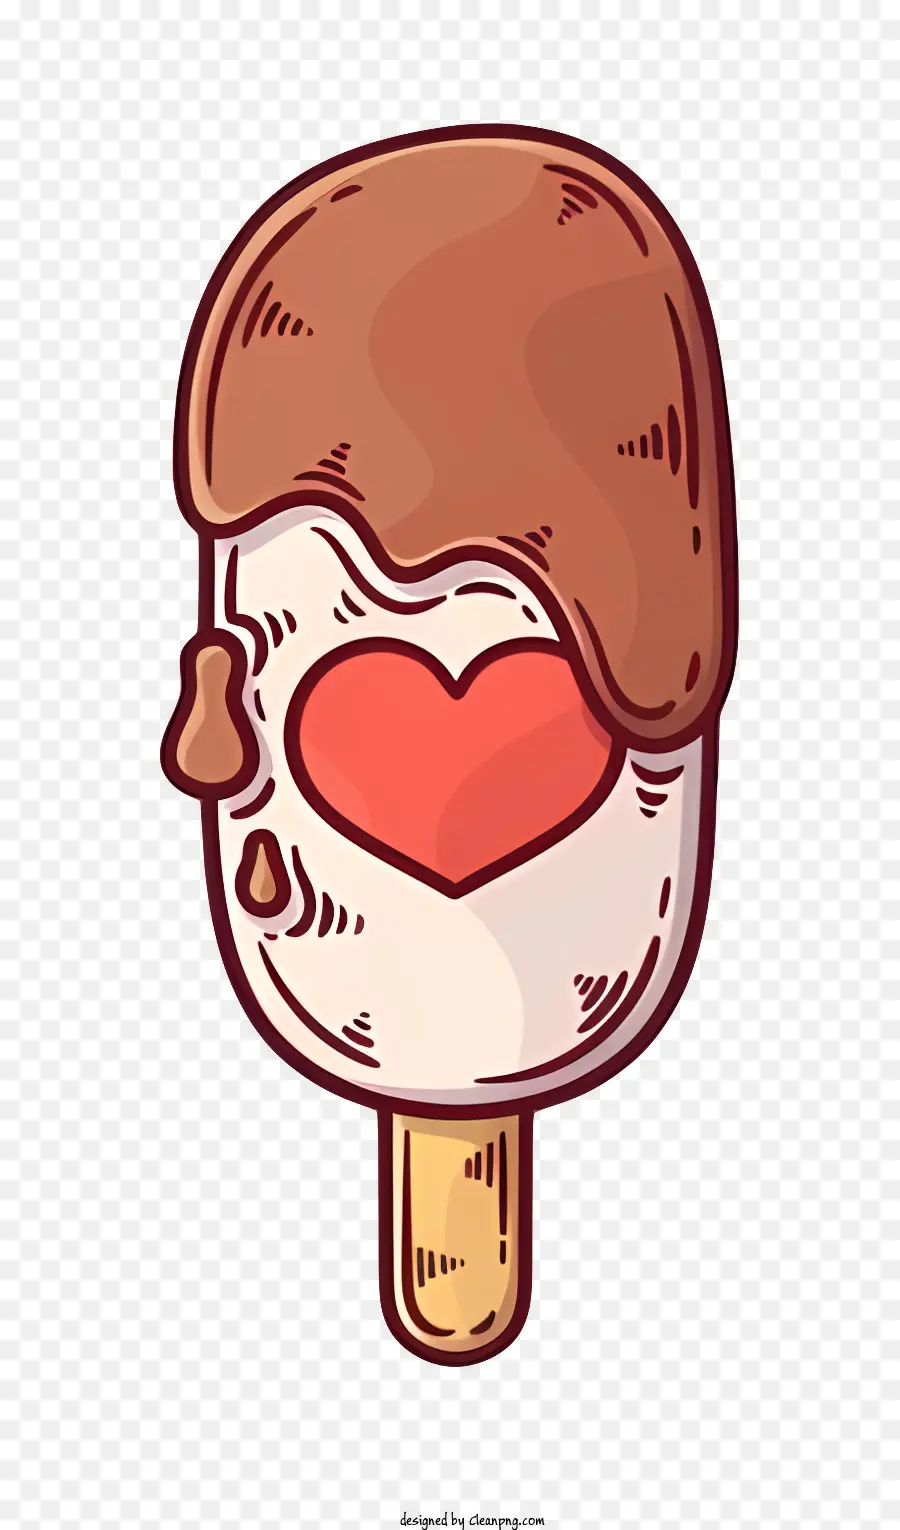 chocolate lollipop heart-shaped lollipop swirled chocolate candy heart-shaped candy red chocolate heart